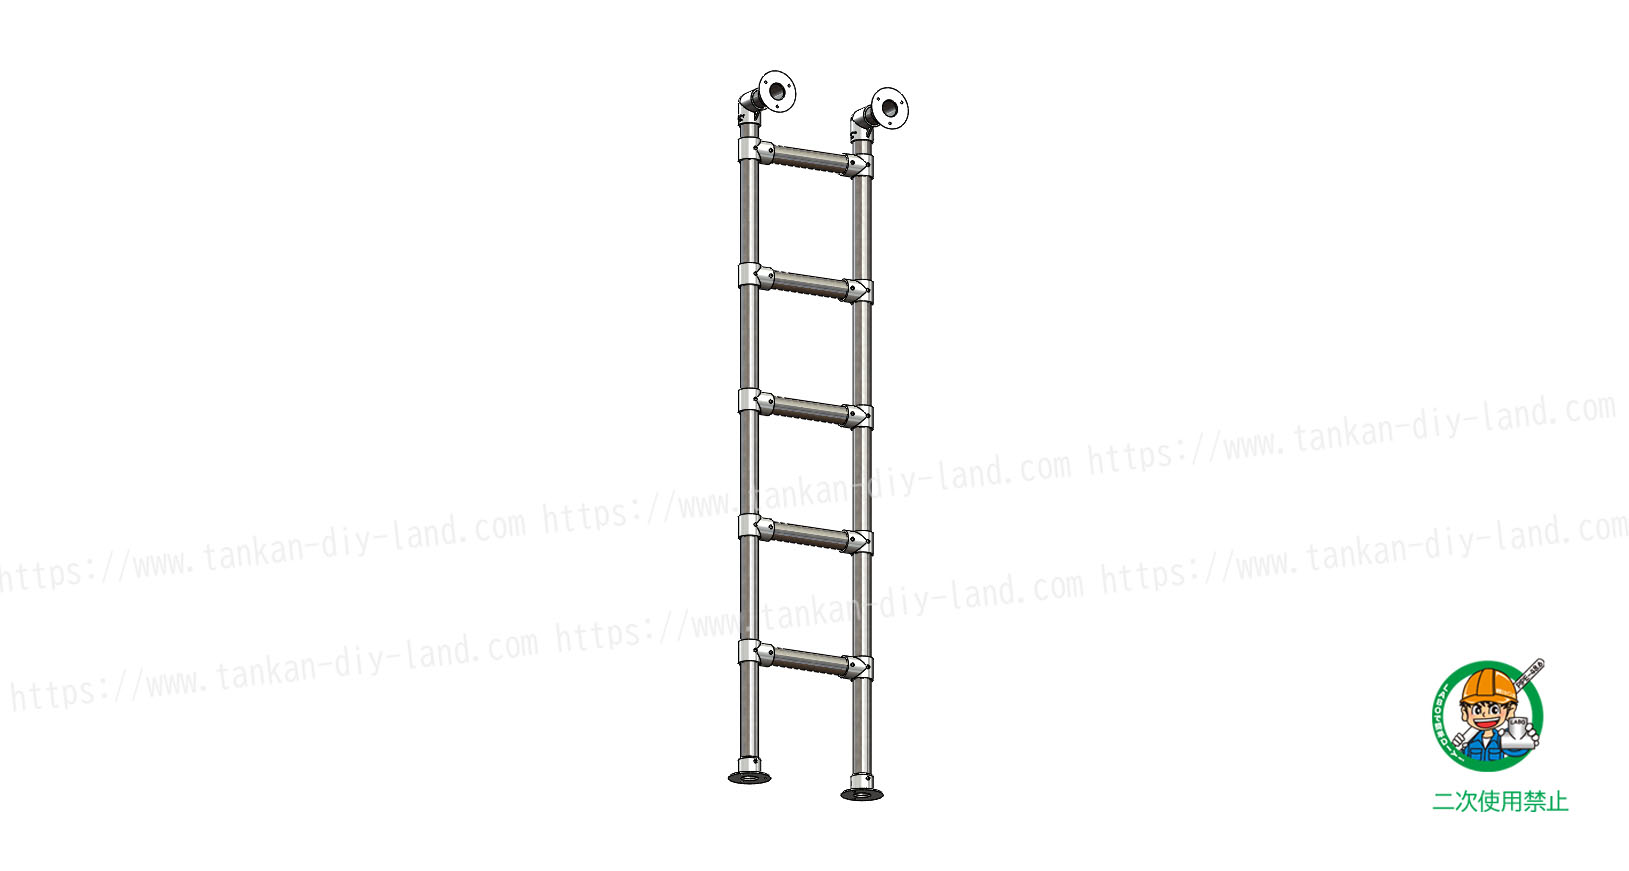 垂直階段 はしご もｌａｂｏで手作り 階段 3 単管パイプで作る 単管パイプのdiy向け 技術者向けの情報なら単管diyランド